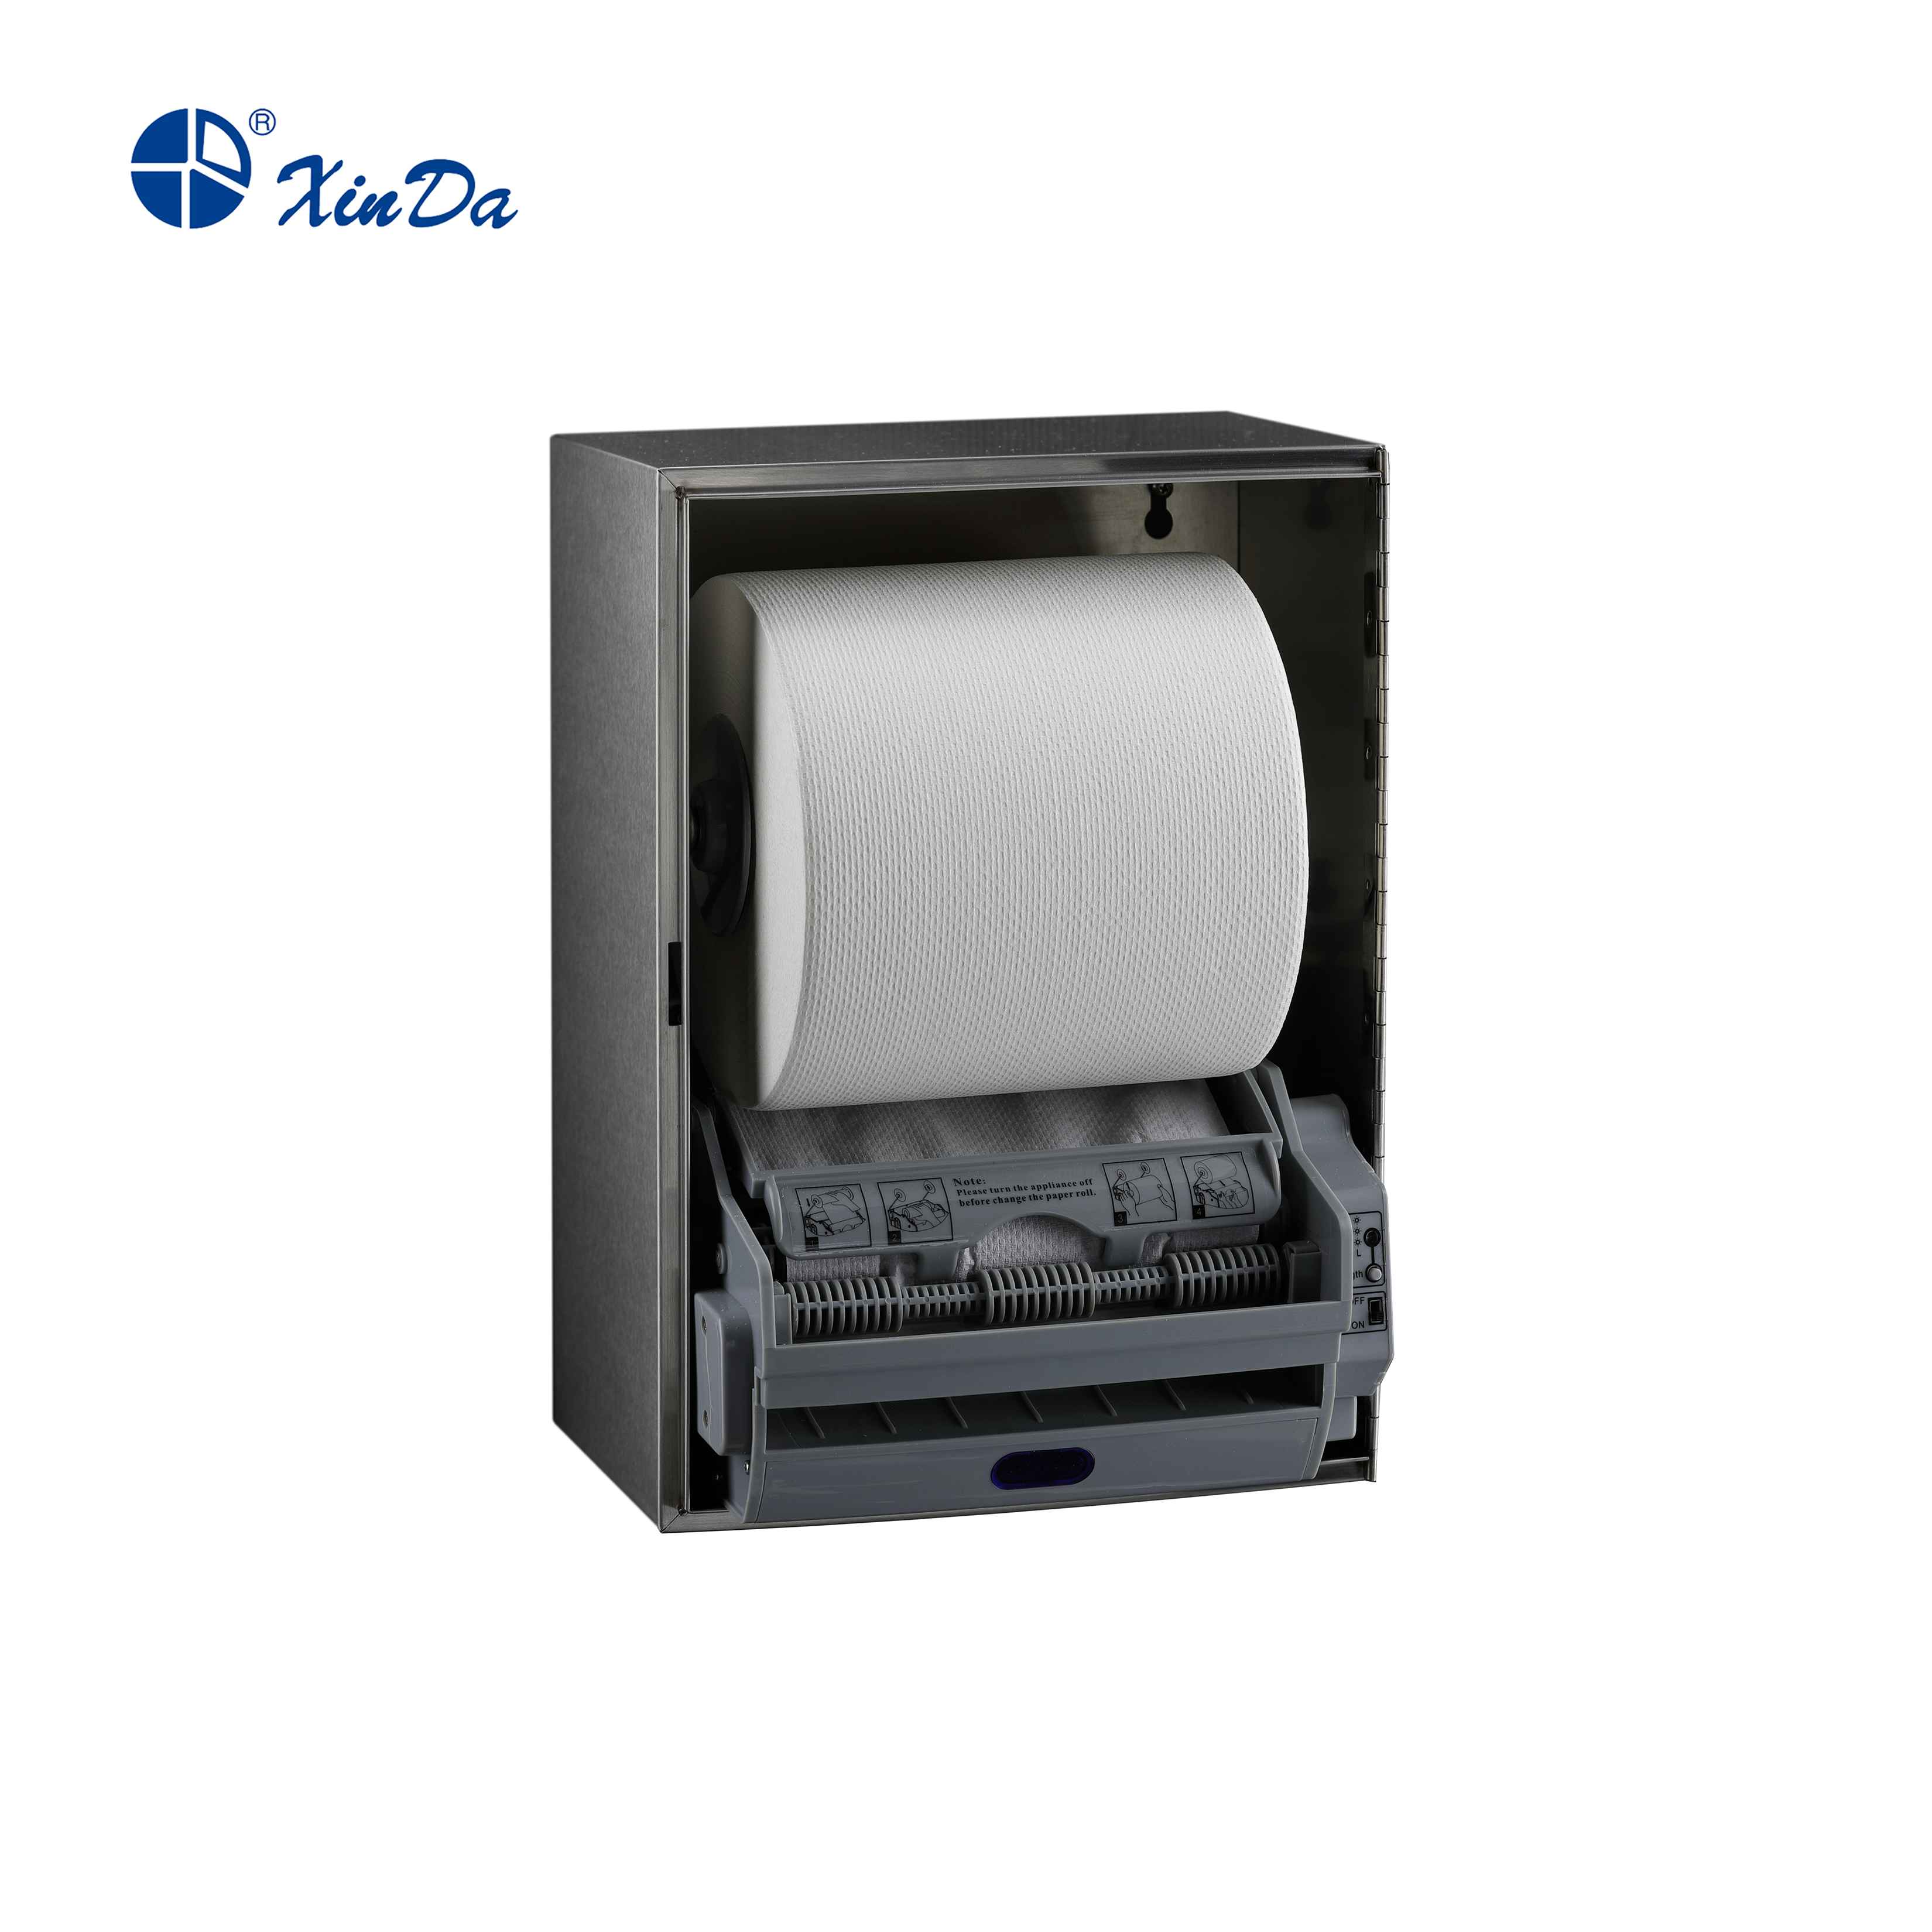 Der XinDa CZQ20K Edelstahl Hotel Bifold Toilettenpapierhalter Toilettensitzbezug Spender Papierspender